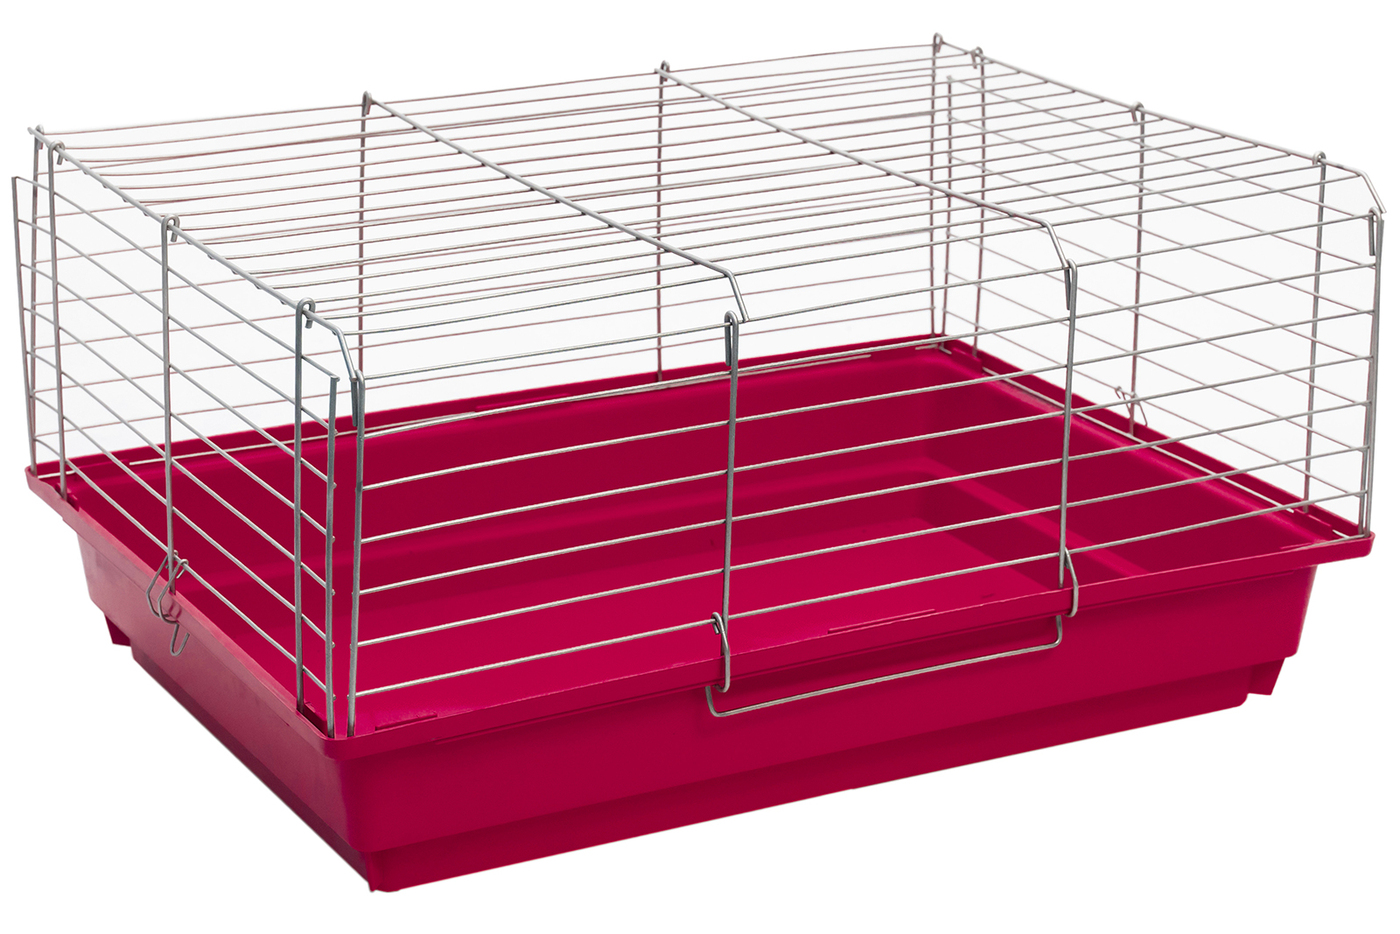 Клетка для кроликов PetTails, складная, шаг прута 22мм, 58*40*30см, рубиновый, хром